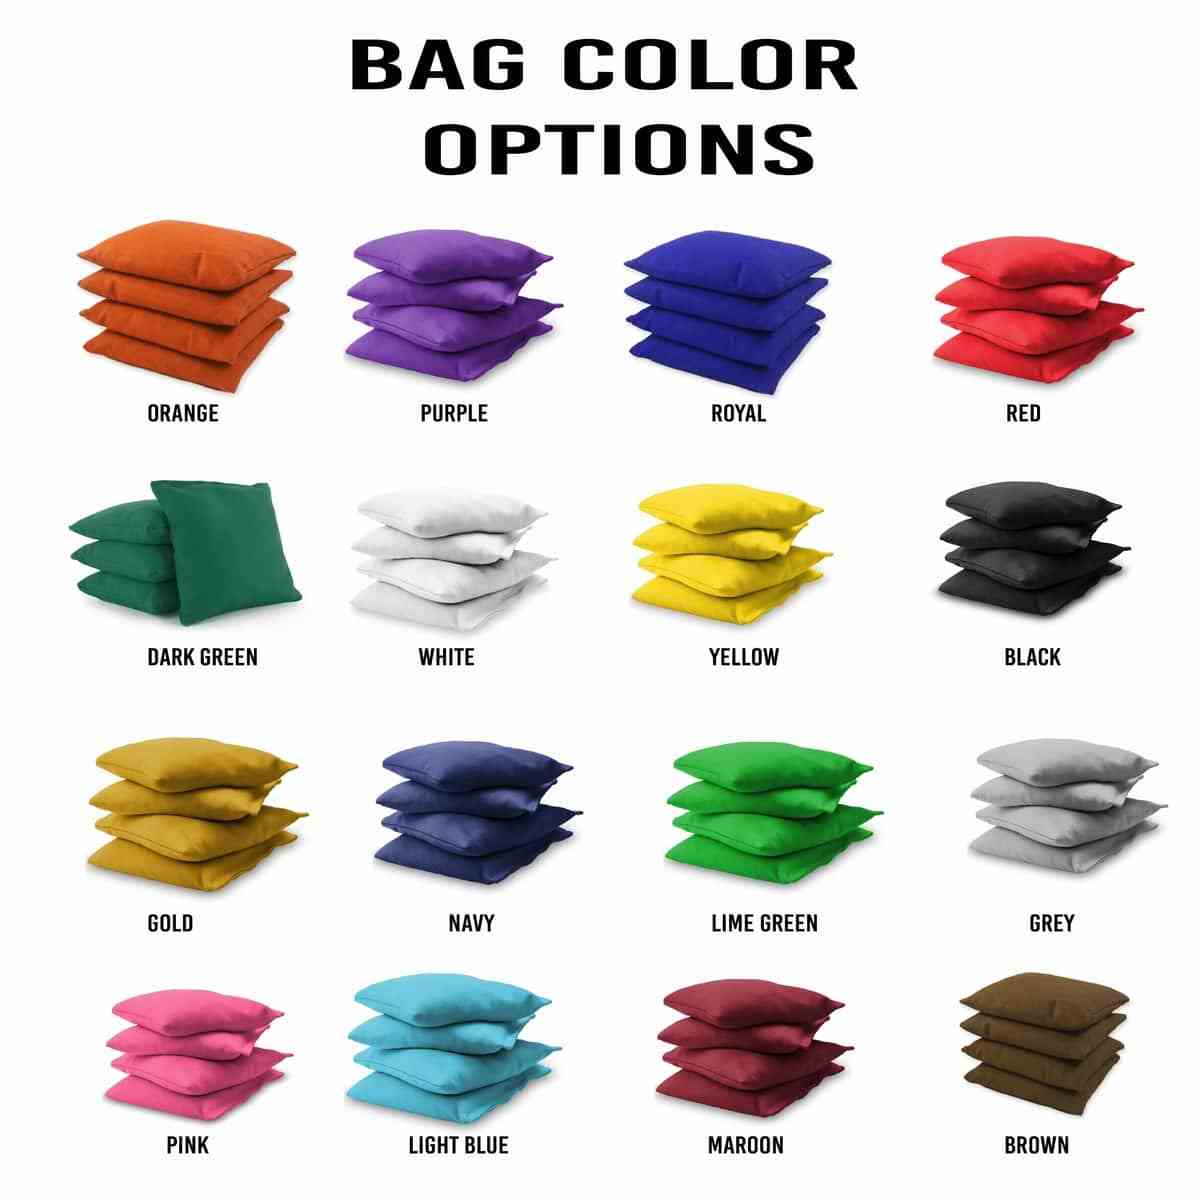 #1 Dad Screwdriver 2x4 bag colors